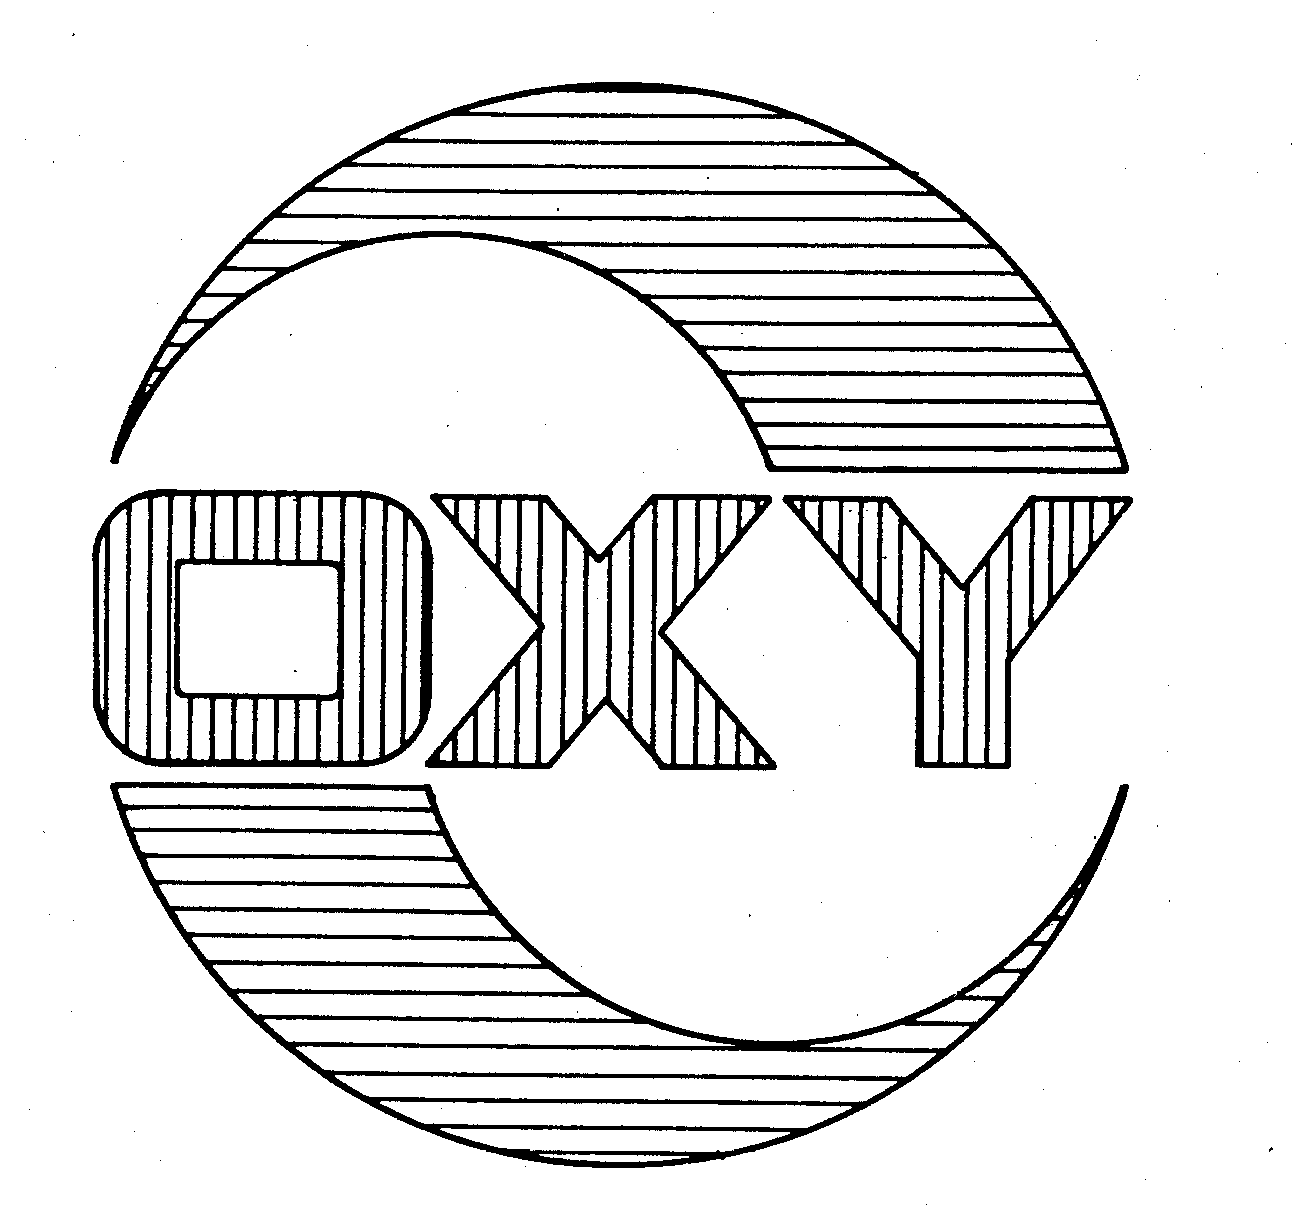 OXY